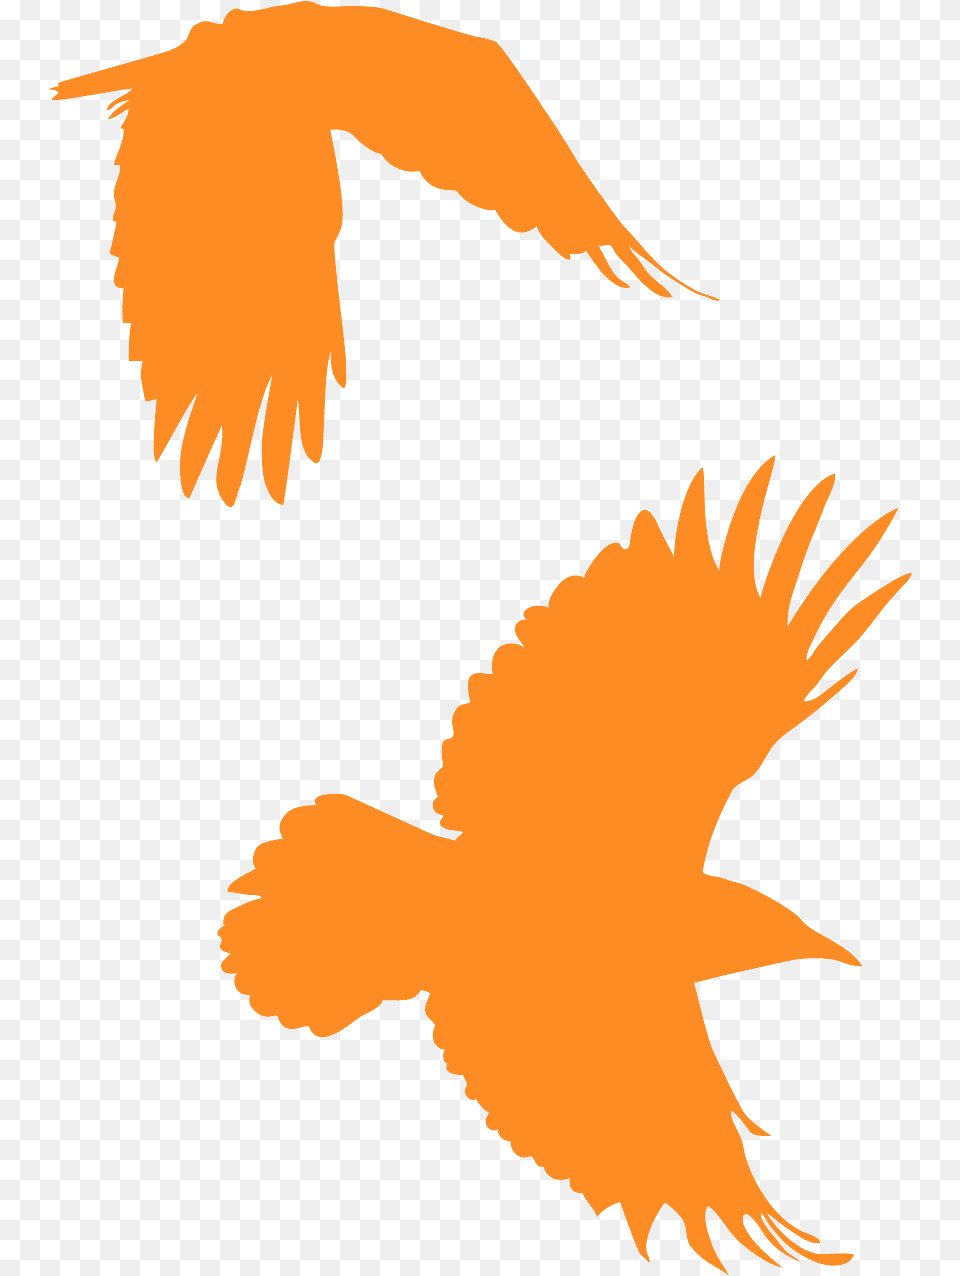 Corbeau Orange, Animal, Bird, Flying, Baby Png Image